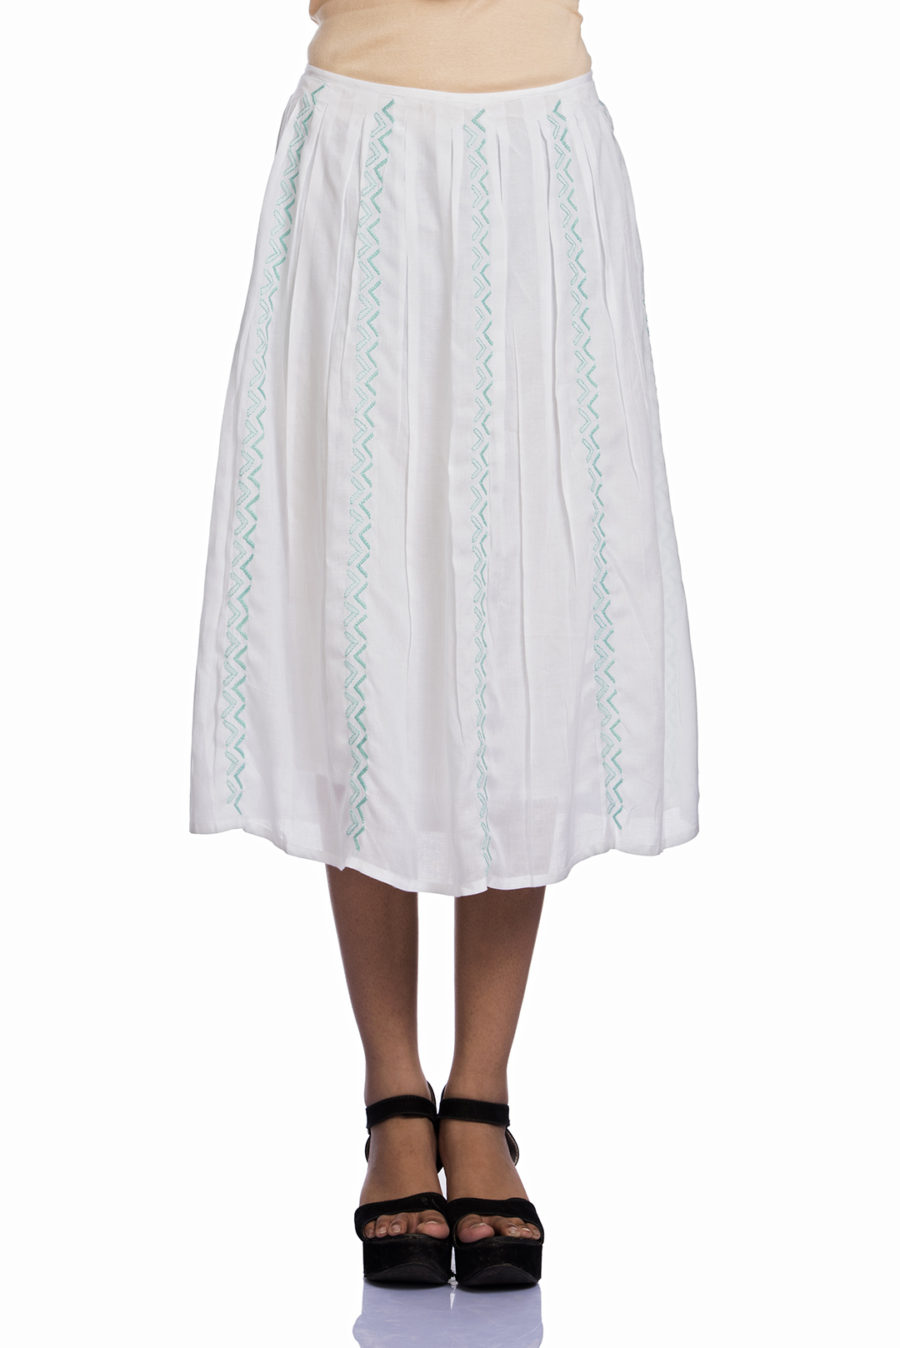 White box pleated lucknowi chikankari midi skirt | Ethnic and Beyond